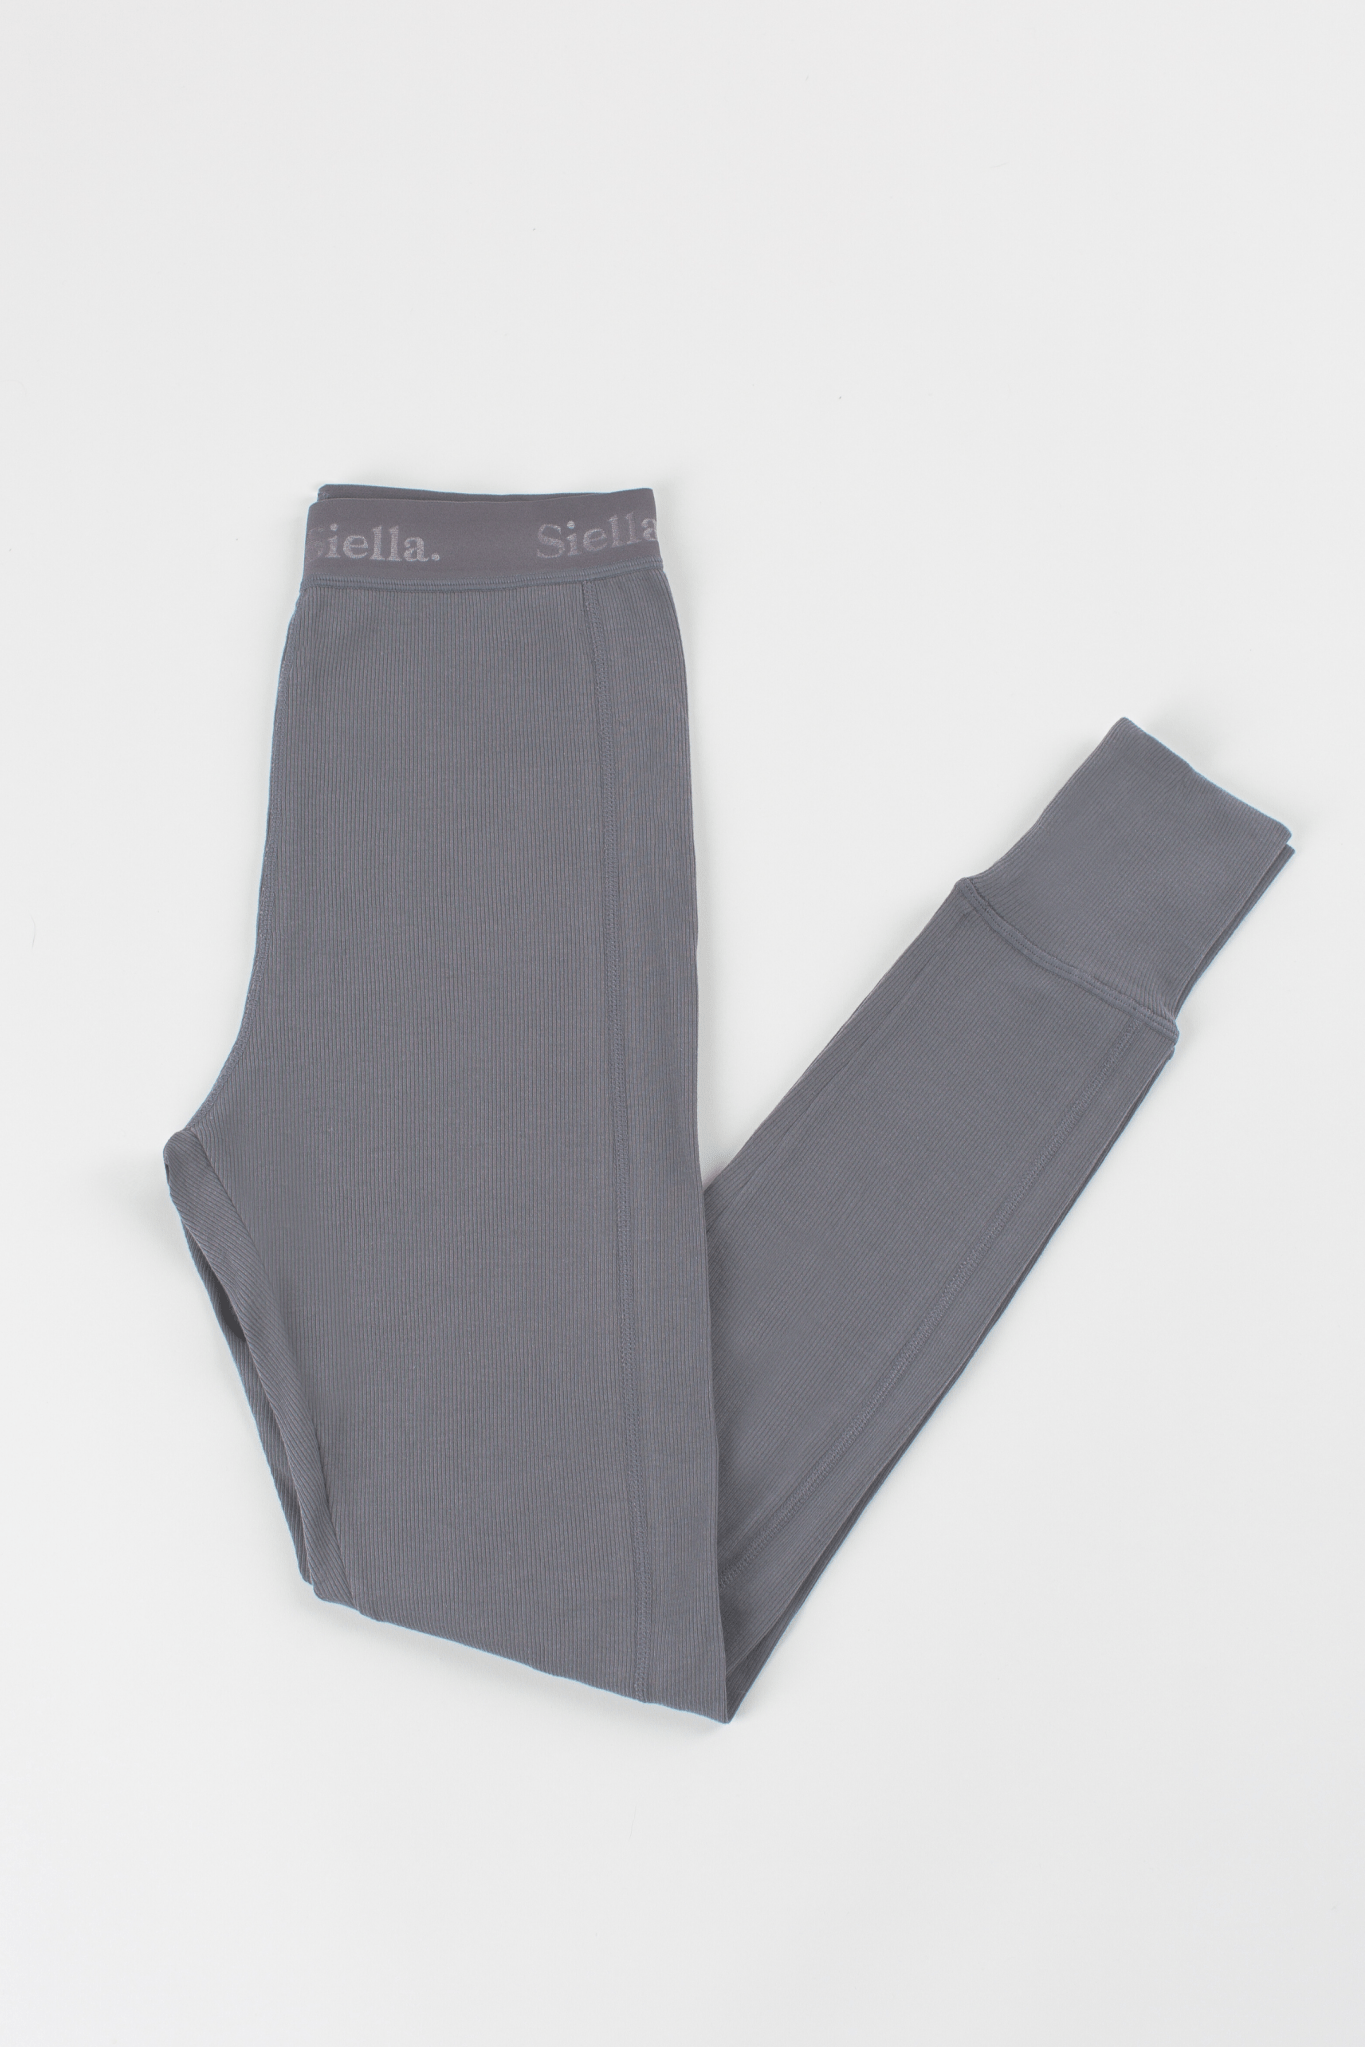 Cotton Rib Legging - Siella - Color: Oxford Grey